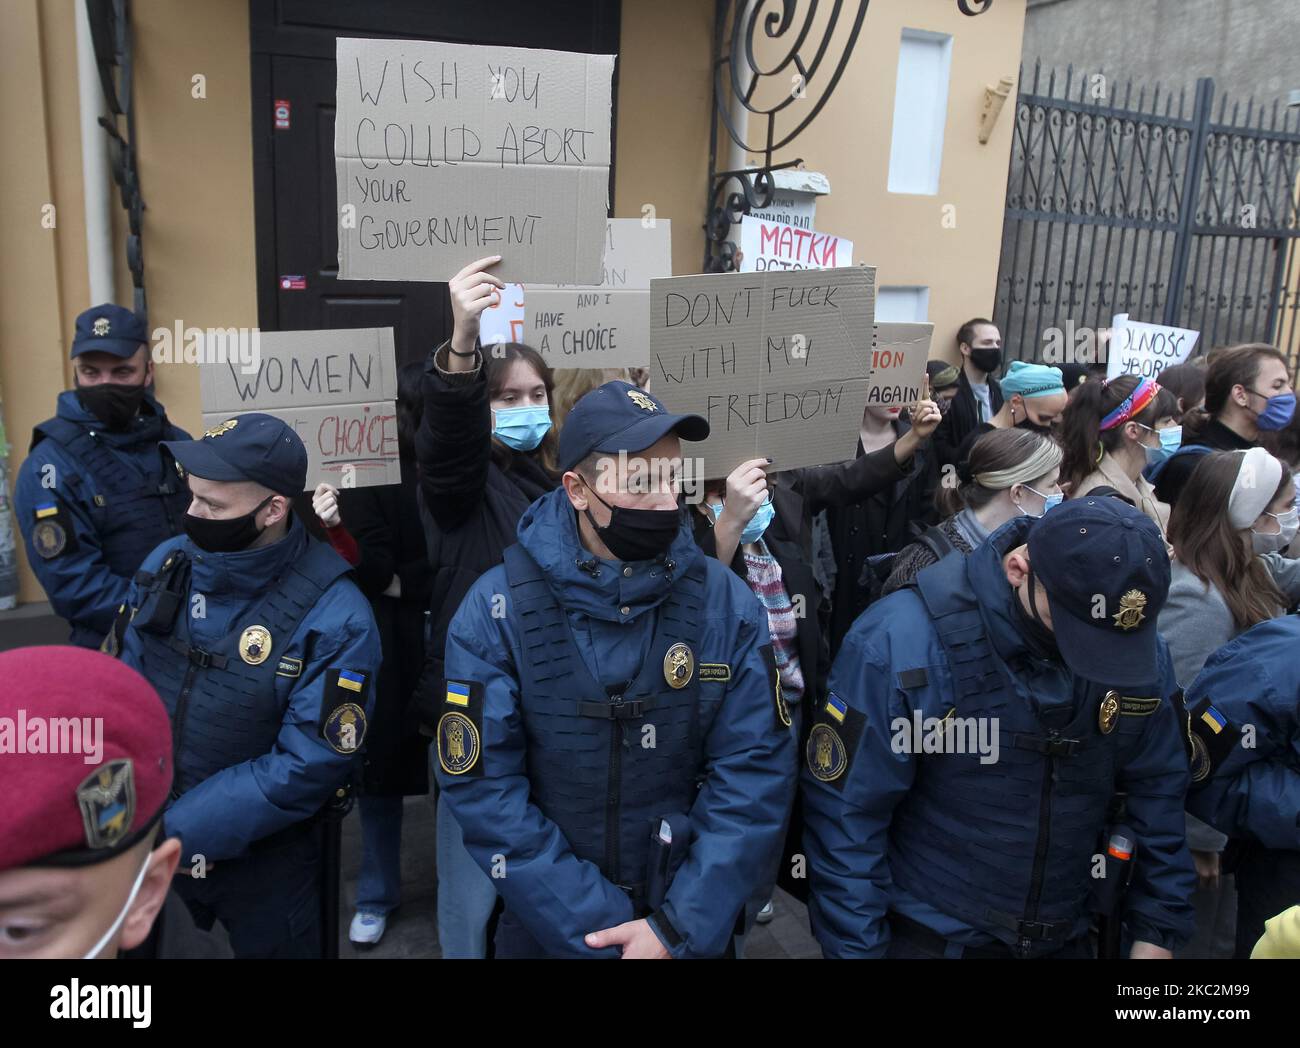 Les Ukrainiens assistent à un rassemblement de solidarité avec les manifestants polonais contre le durcissement de la loi polonaise sur l'avortement, tandis que les soldats et les policiers de la Garde nationale se tiennent en garde près de l'ambassade de Pologne à Kiev, en Ukraine, le 26 octobre 2020. La Cour constitutionnelle de Pologne a rendu le 22 octobre une décision qui restreint davantage le droit à l'avortement dans le pays, comme l'ont signalé les médias locaux. (Photo par STR/NurPhoto) Banque D'Images